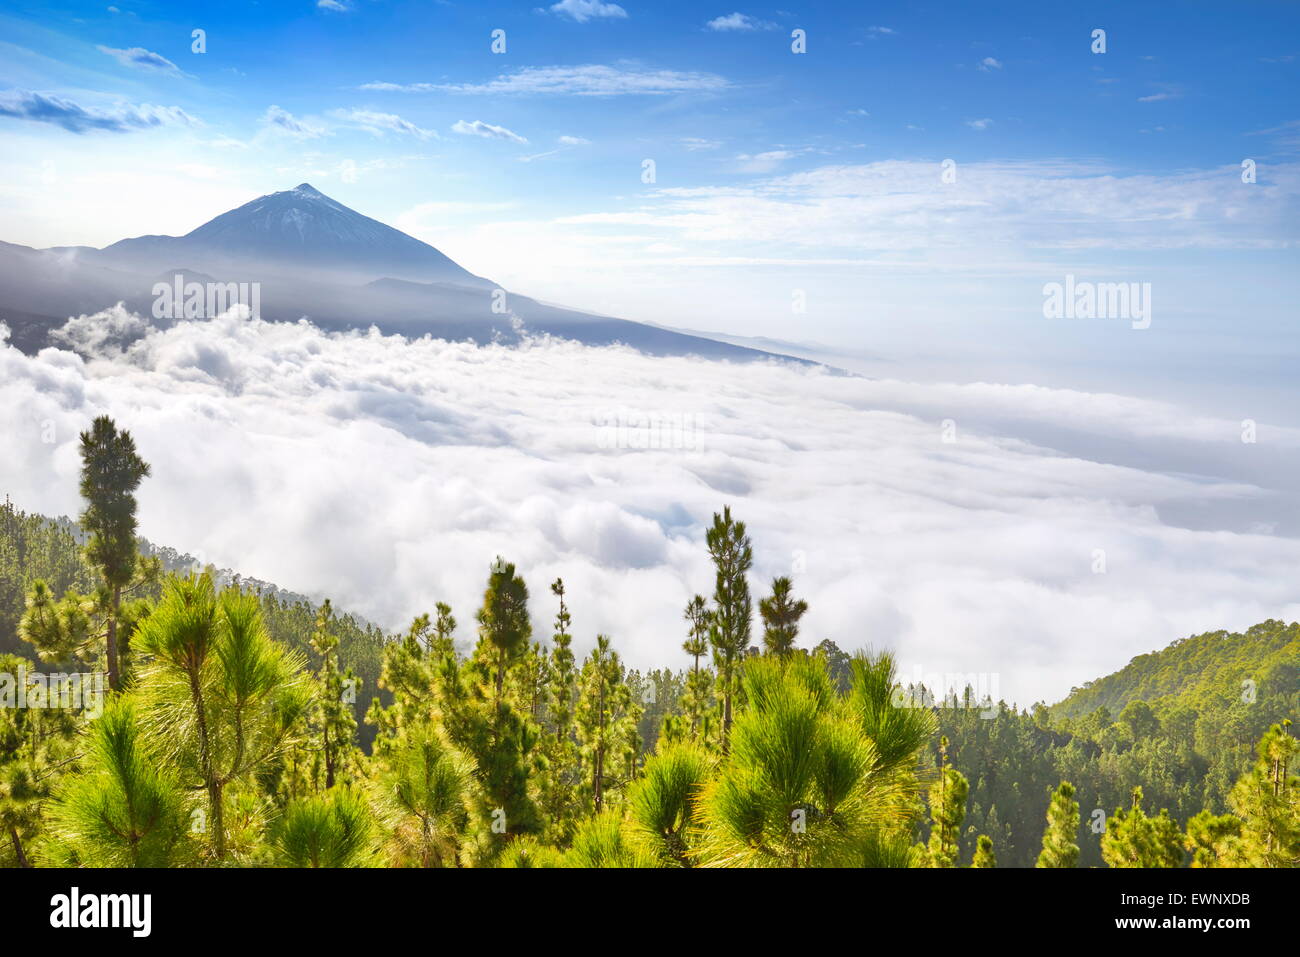 Volcan Teide monter au-dessus de la mer de nuages, Tenerife, Canaries, Espagne Banque D'Images